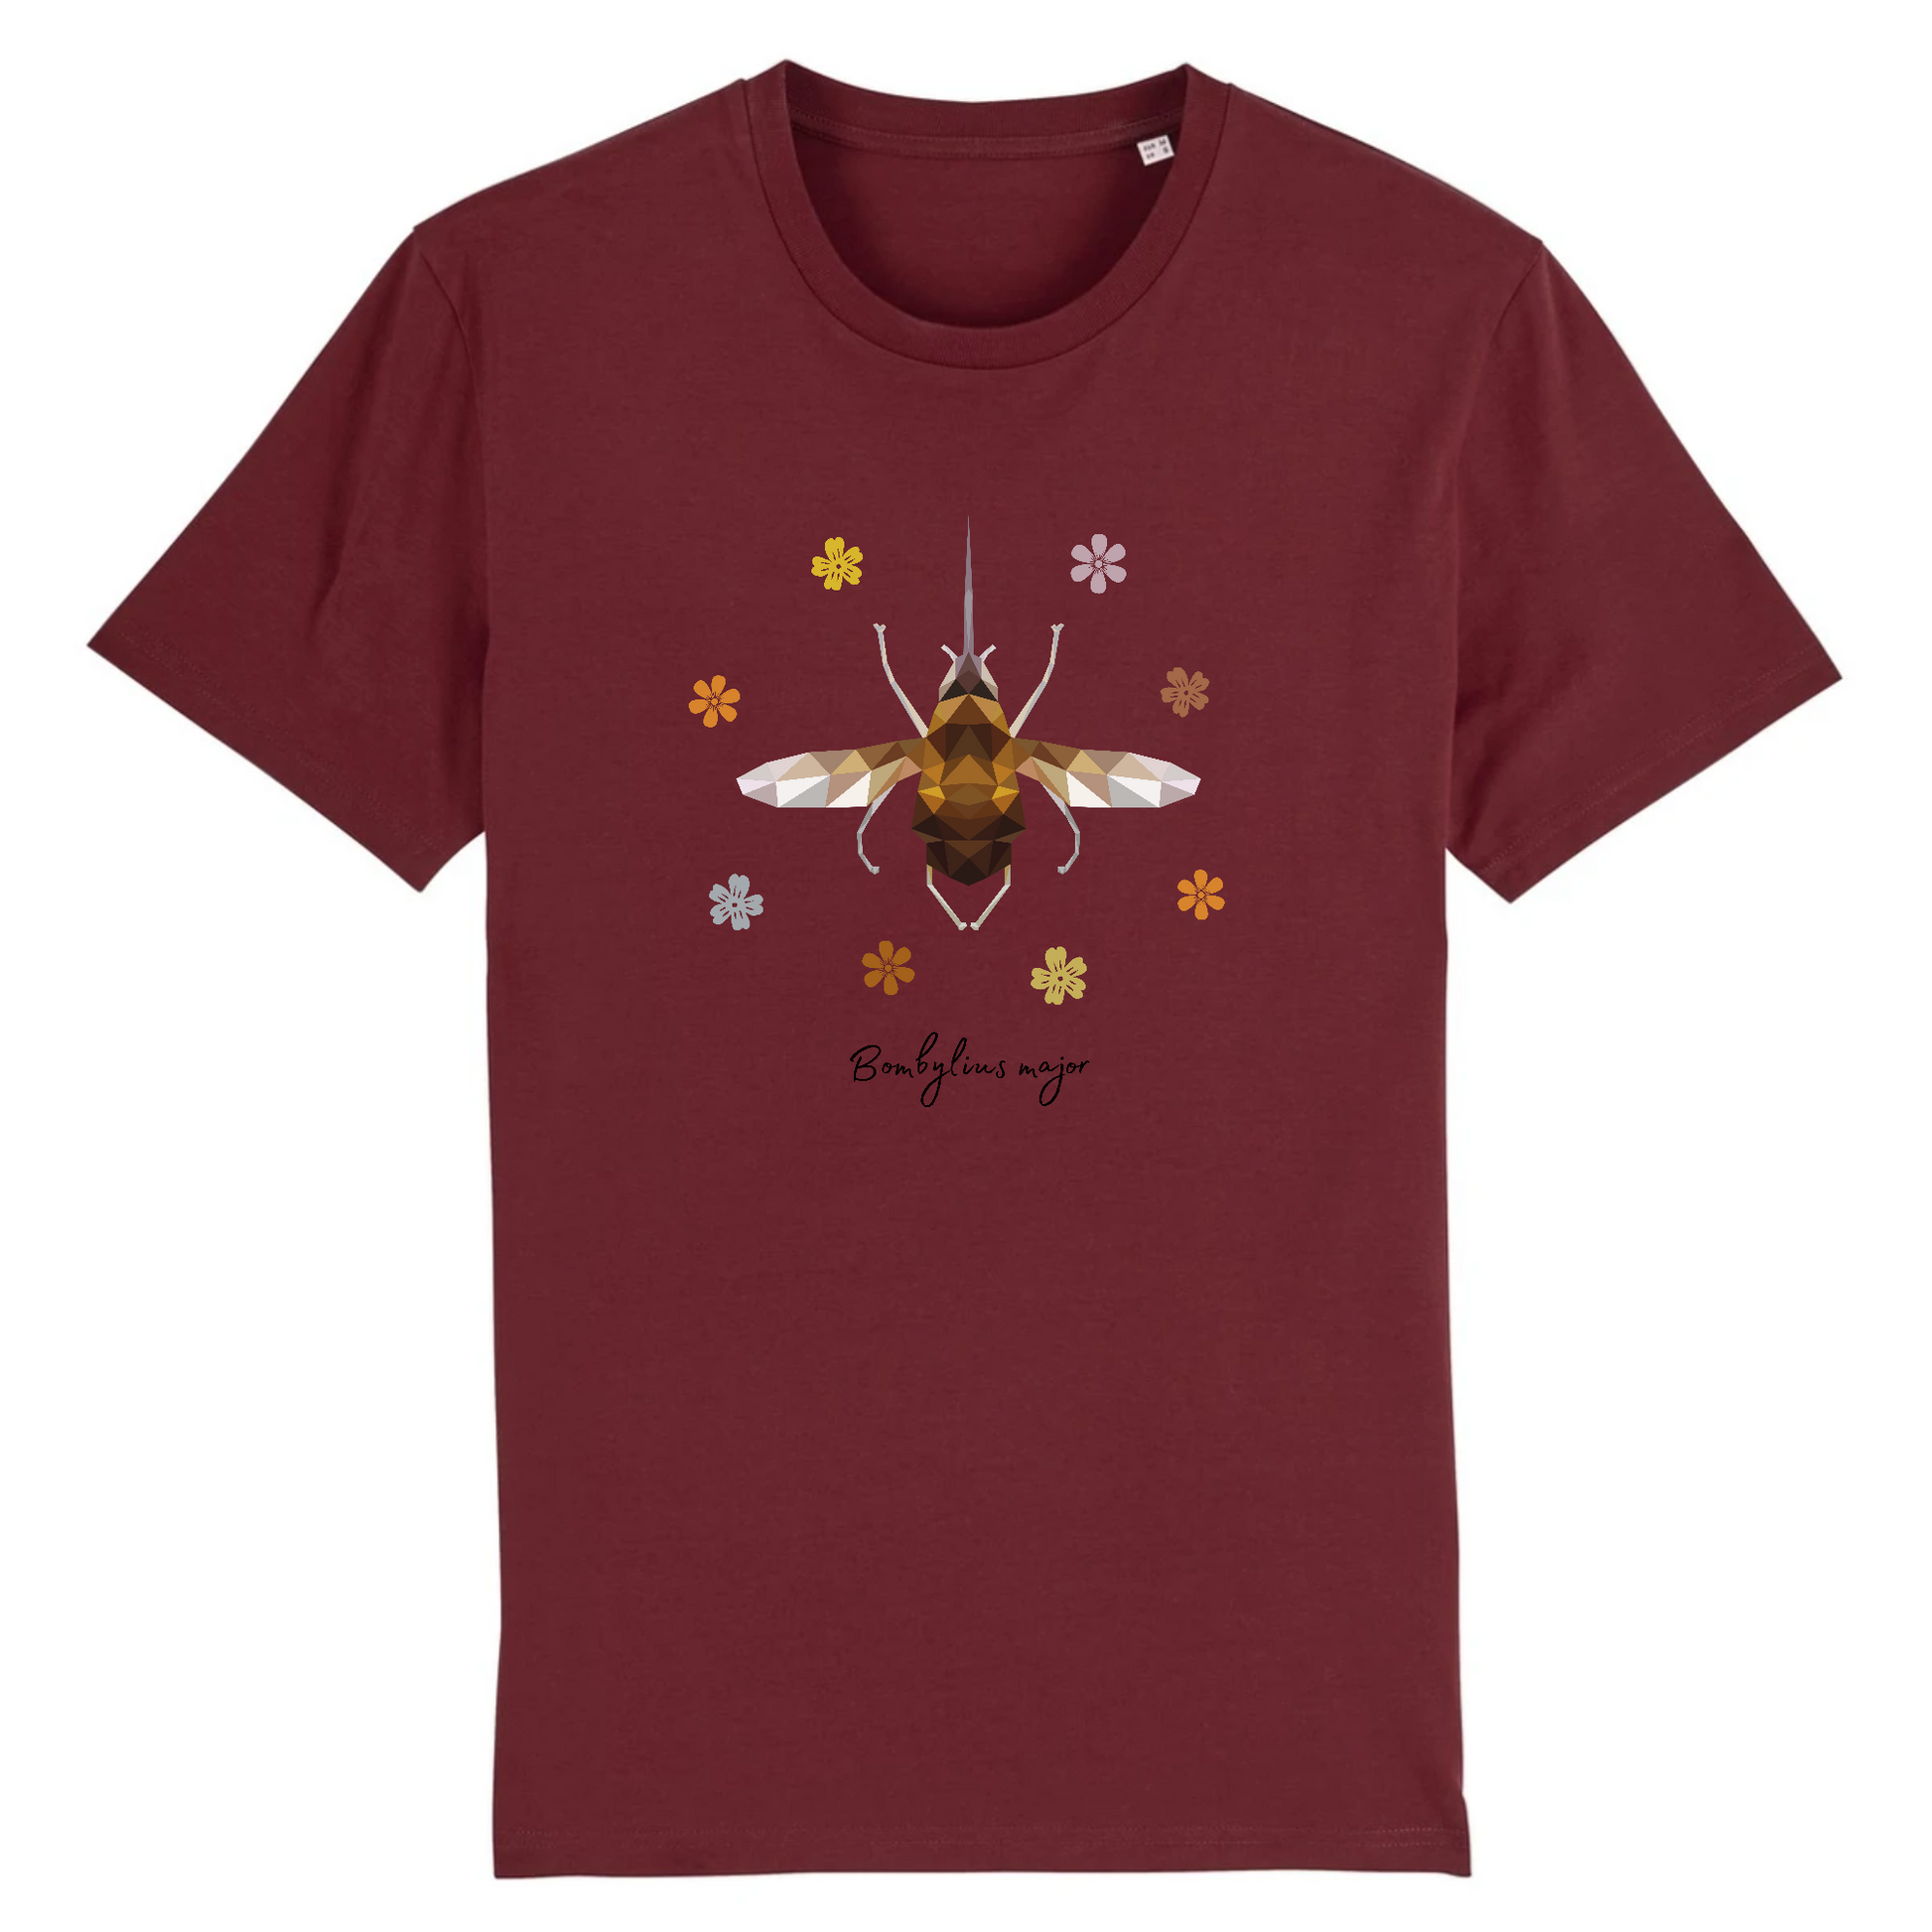 T-shirt homme coton bio | Graphisme insecte bombyle | Bordeaux